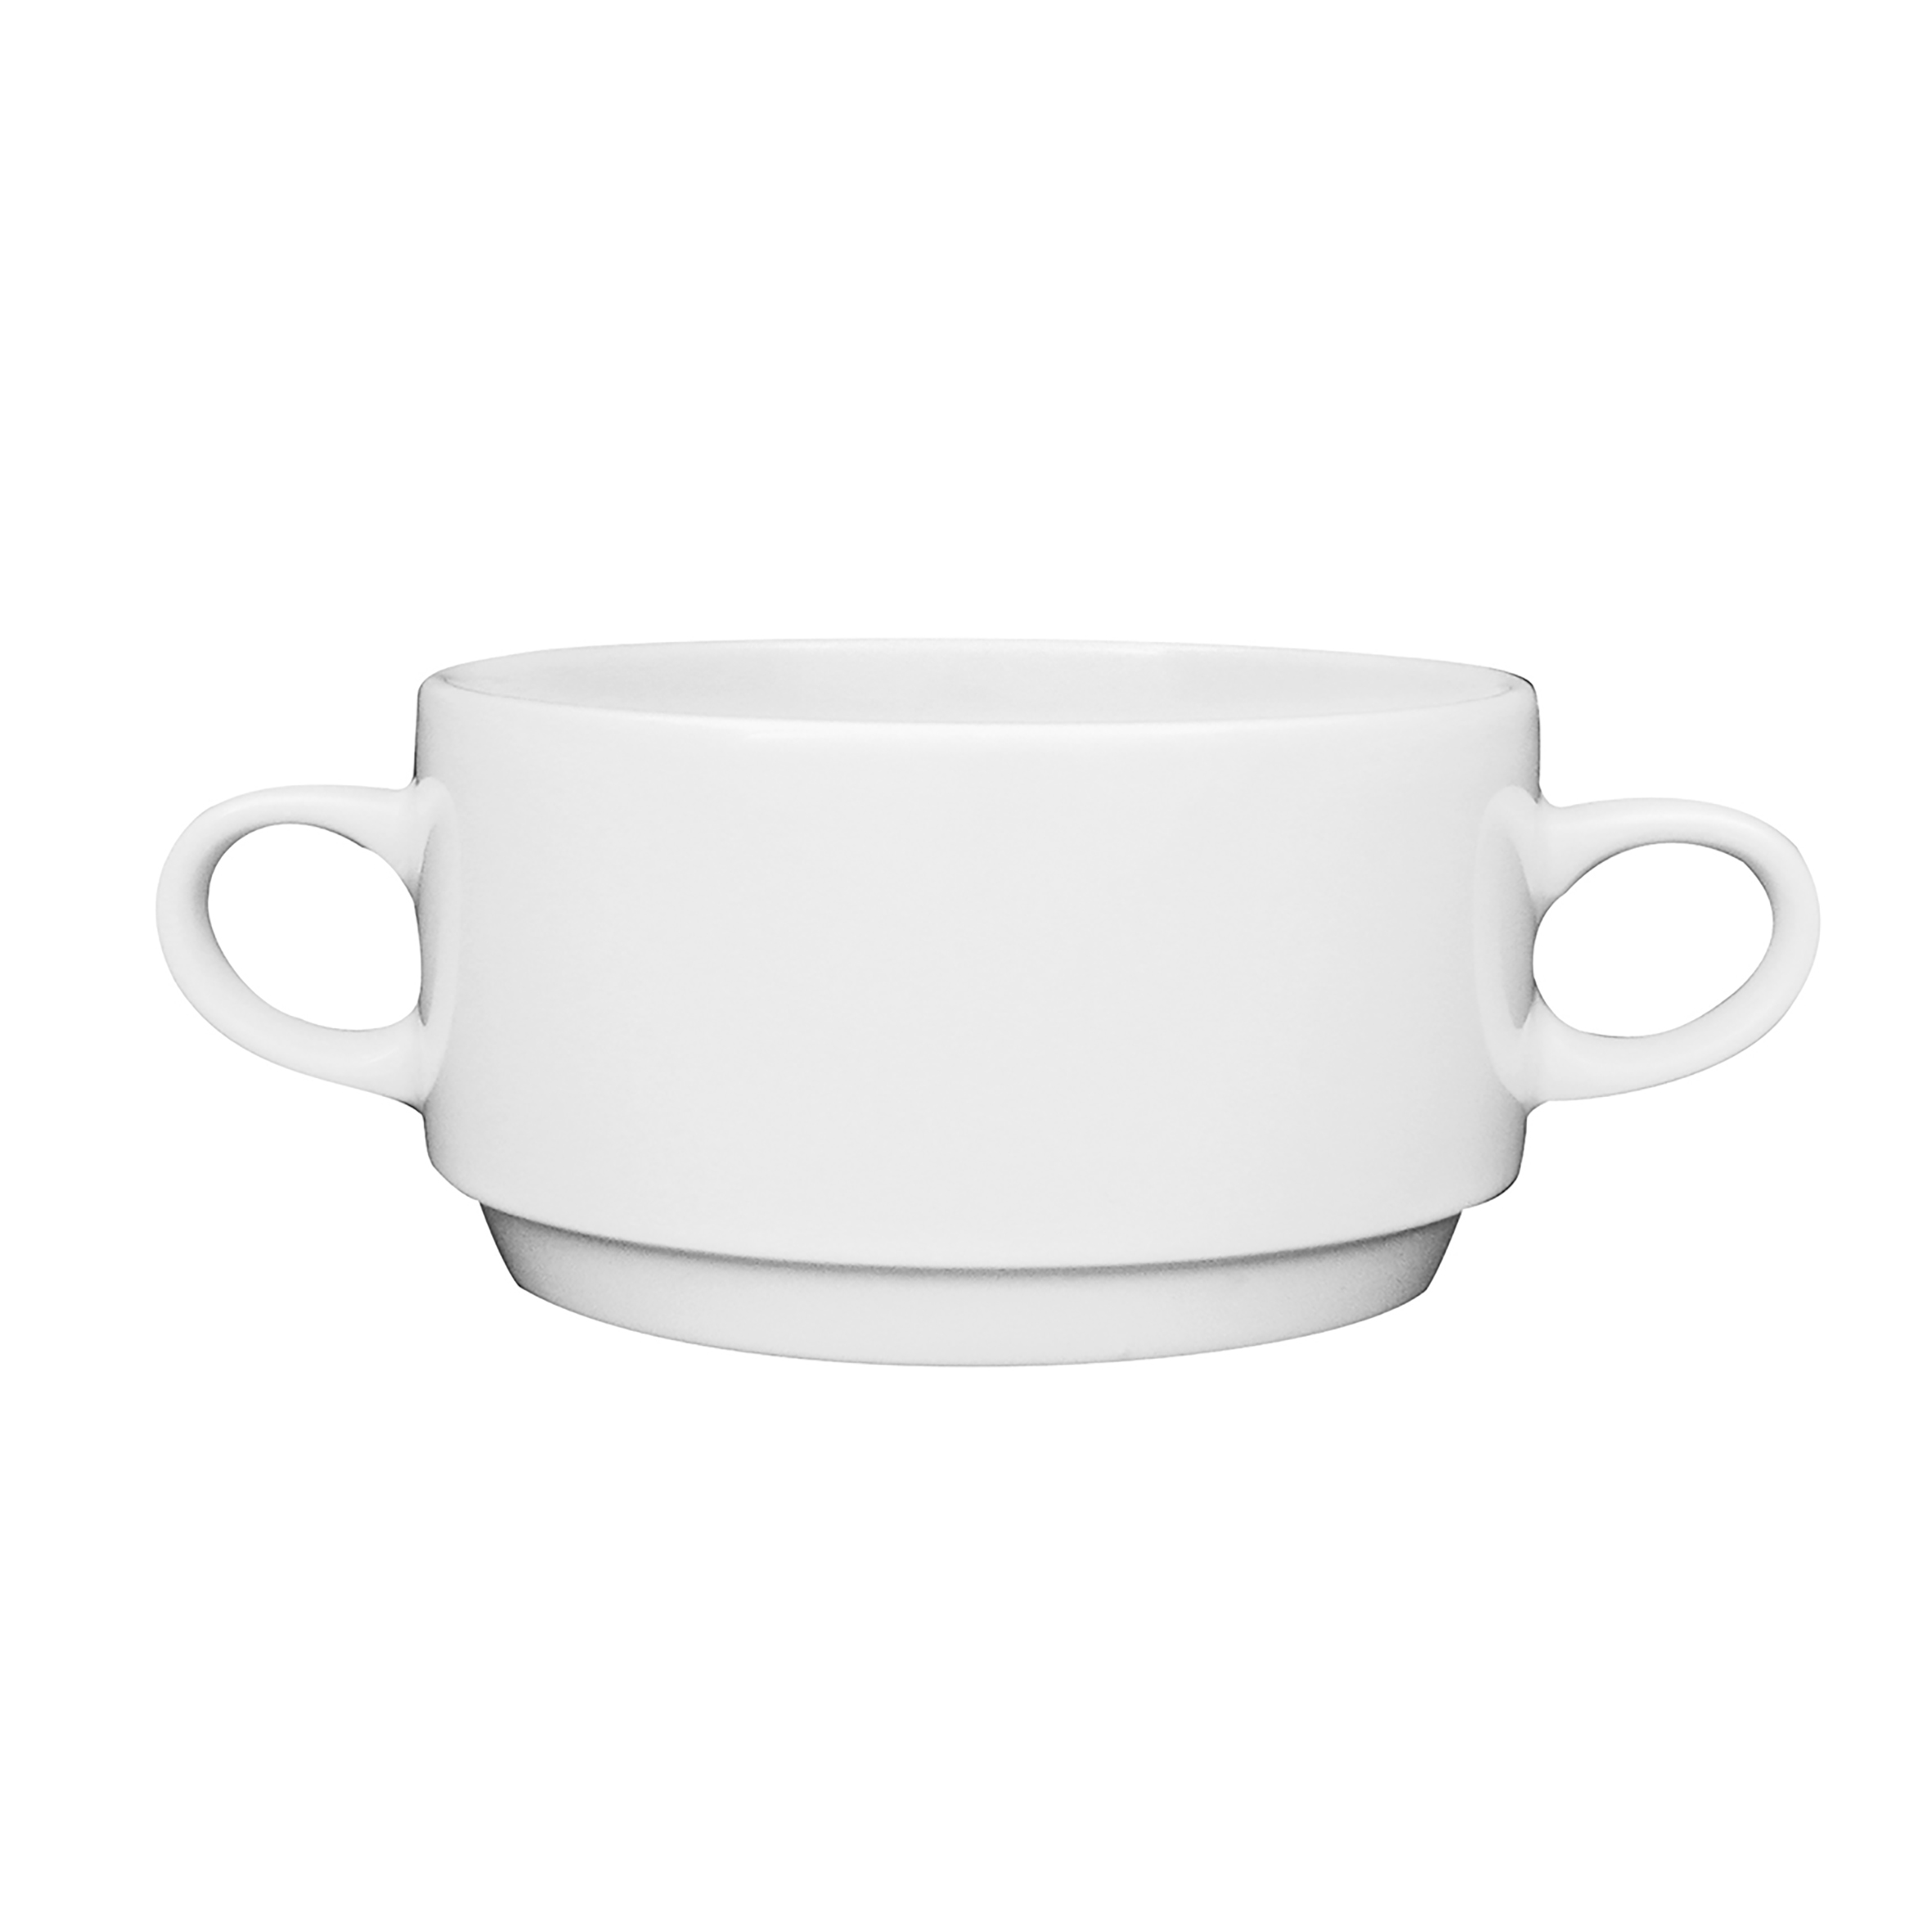 Suppen-Obertasse Inhalt 0,26 ltr - stapelbar -, Form PRIMAVERA - uni weiß -, ohne Untertasse